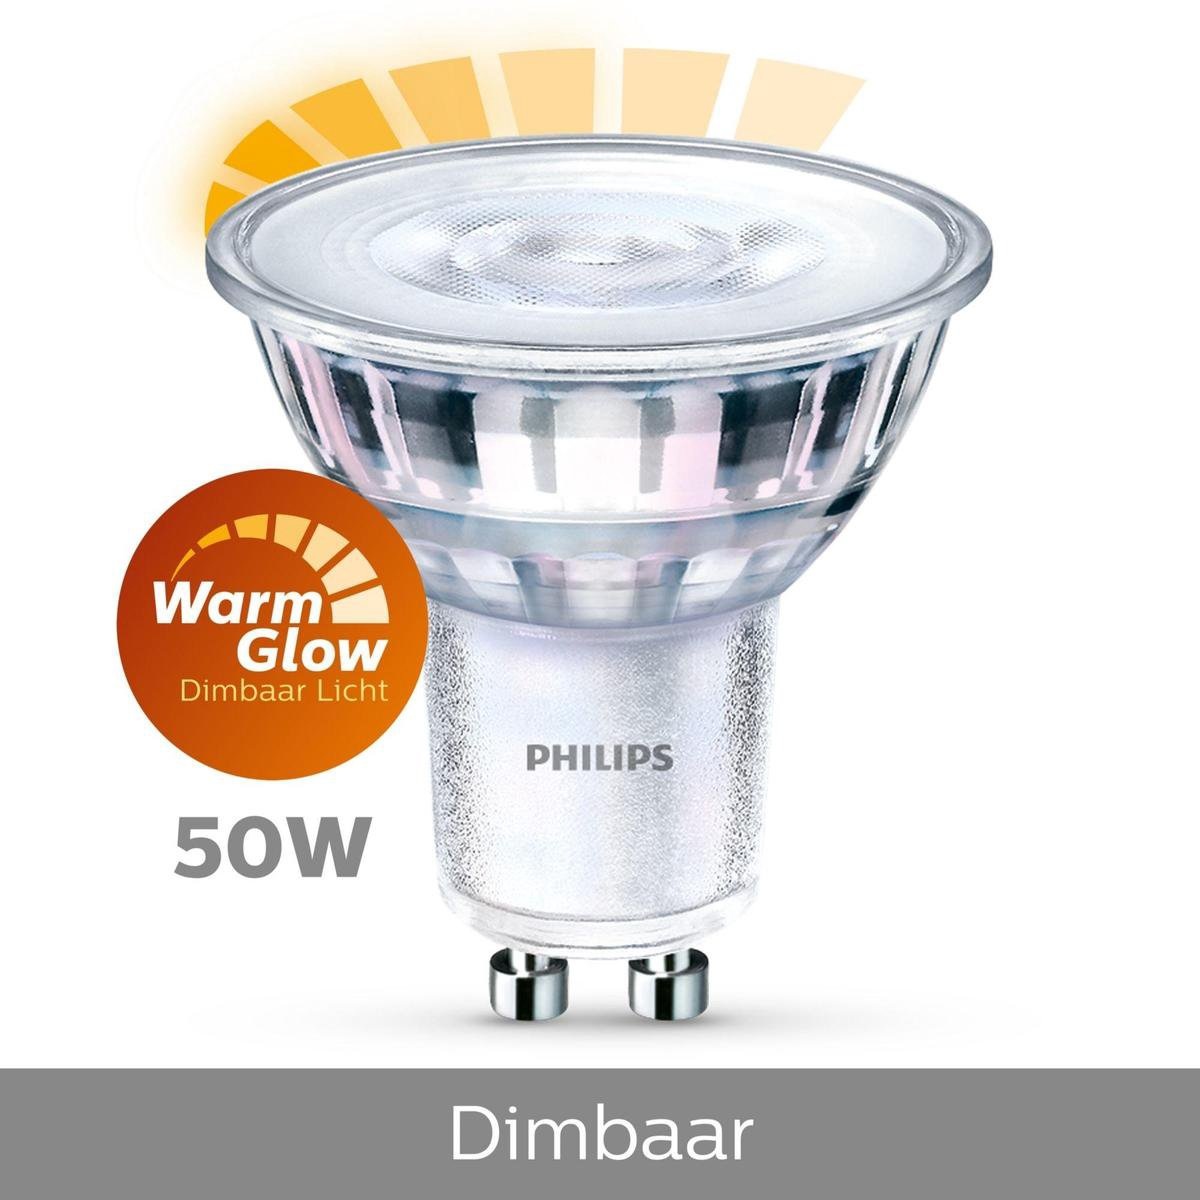 Menagerry browser liefdadigheid Philips GU10 LED lamp 3.8W / 50W WarmGlow Dimbaar - DMQ